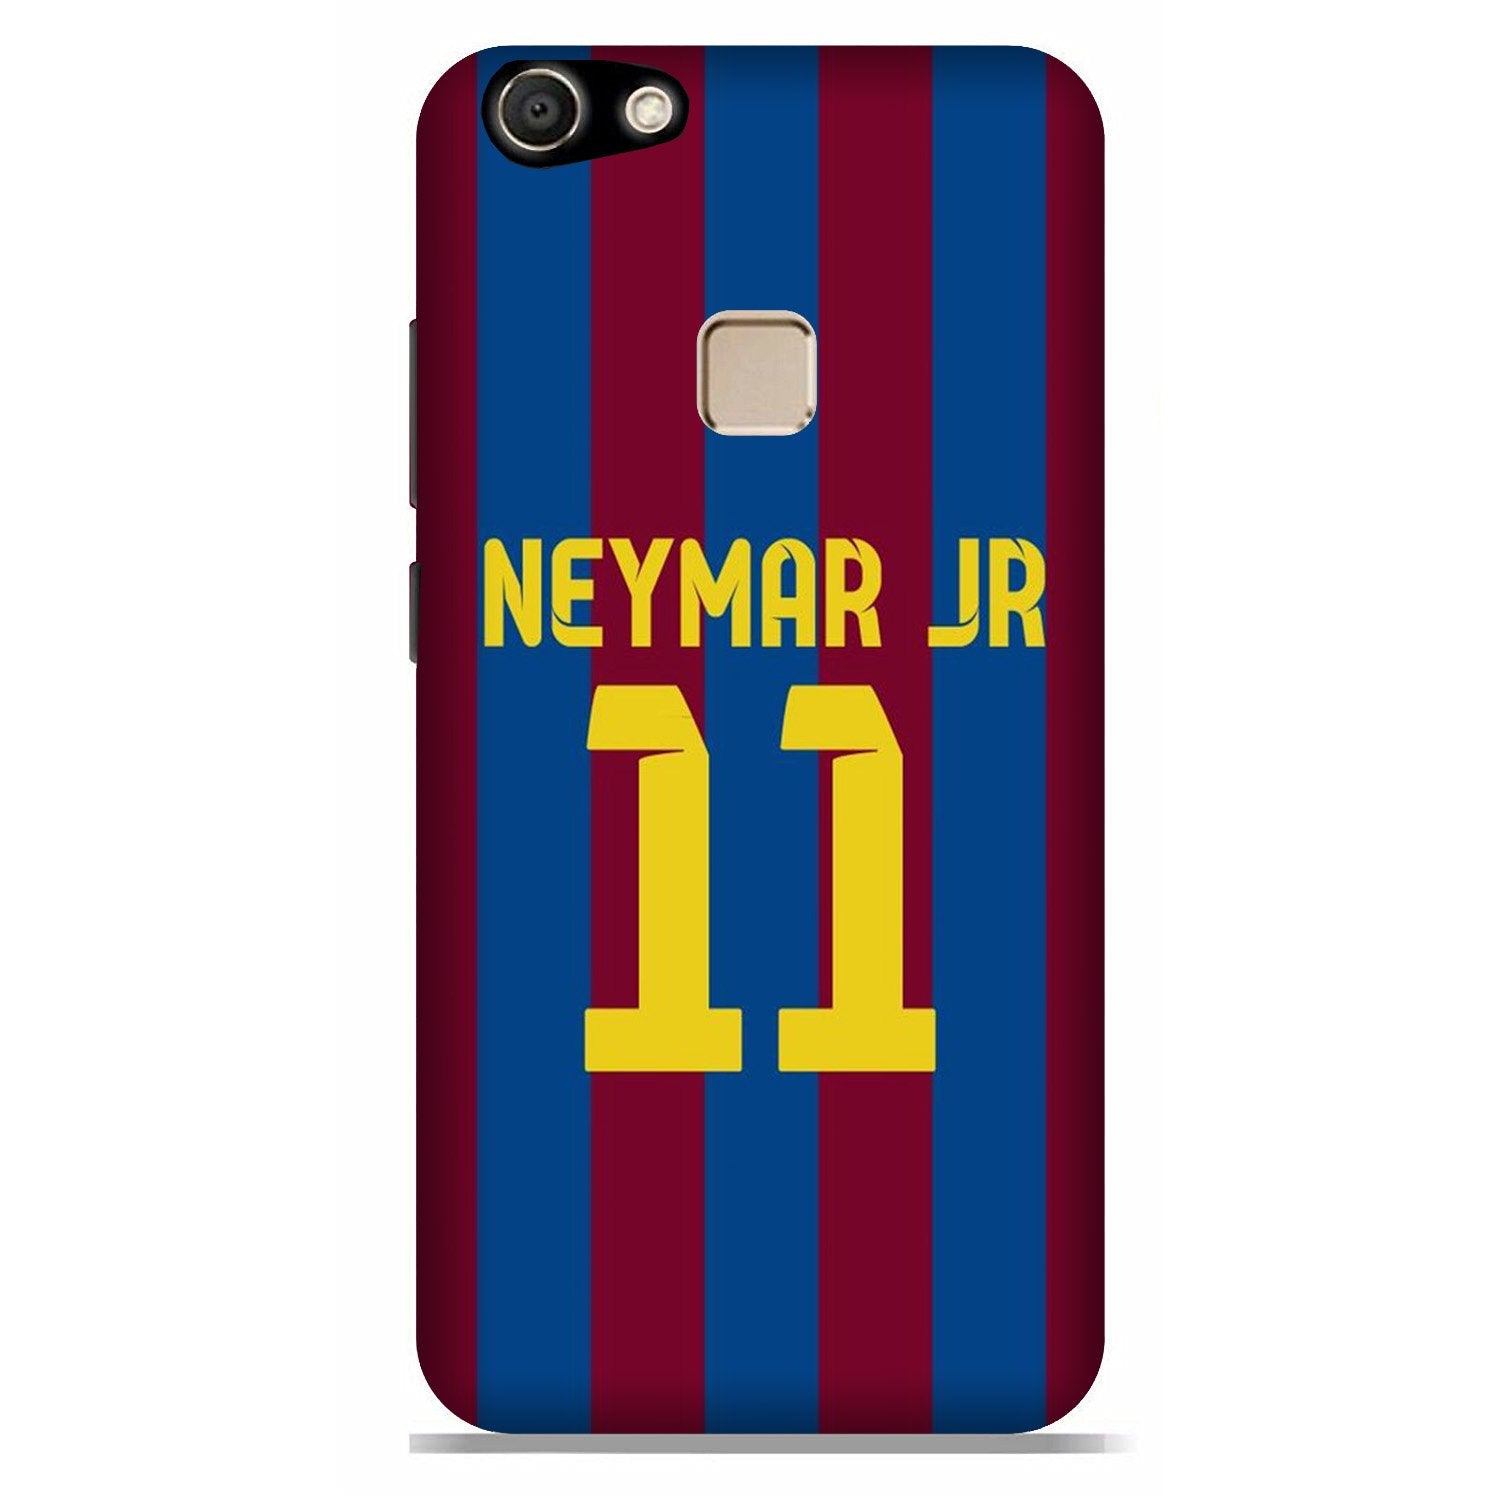 Neymar Jr Case for Vivo V7(Design - 162)